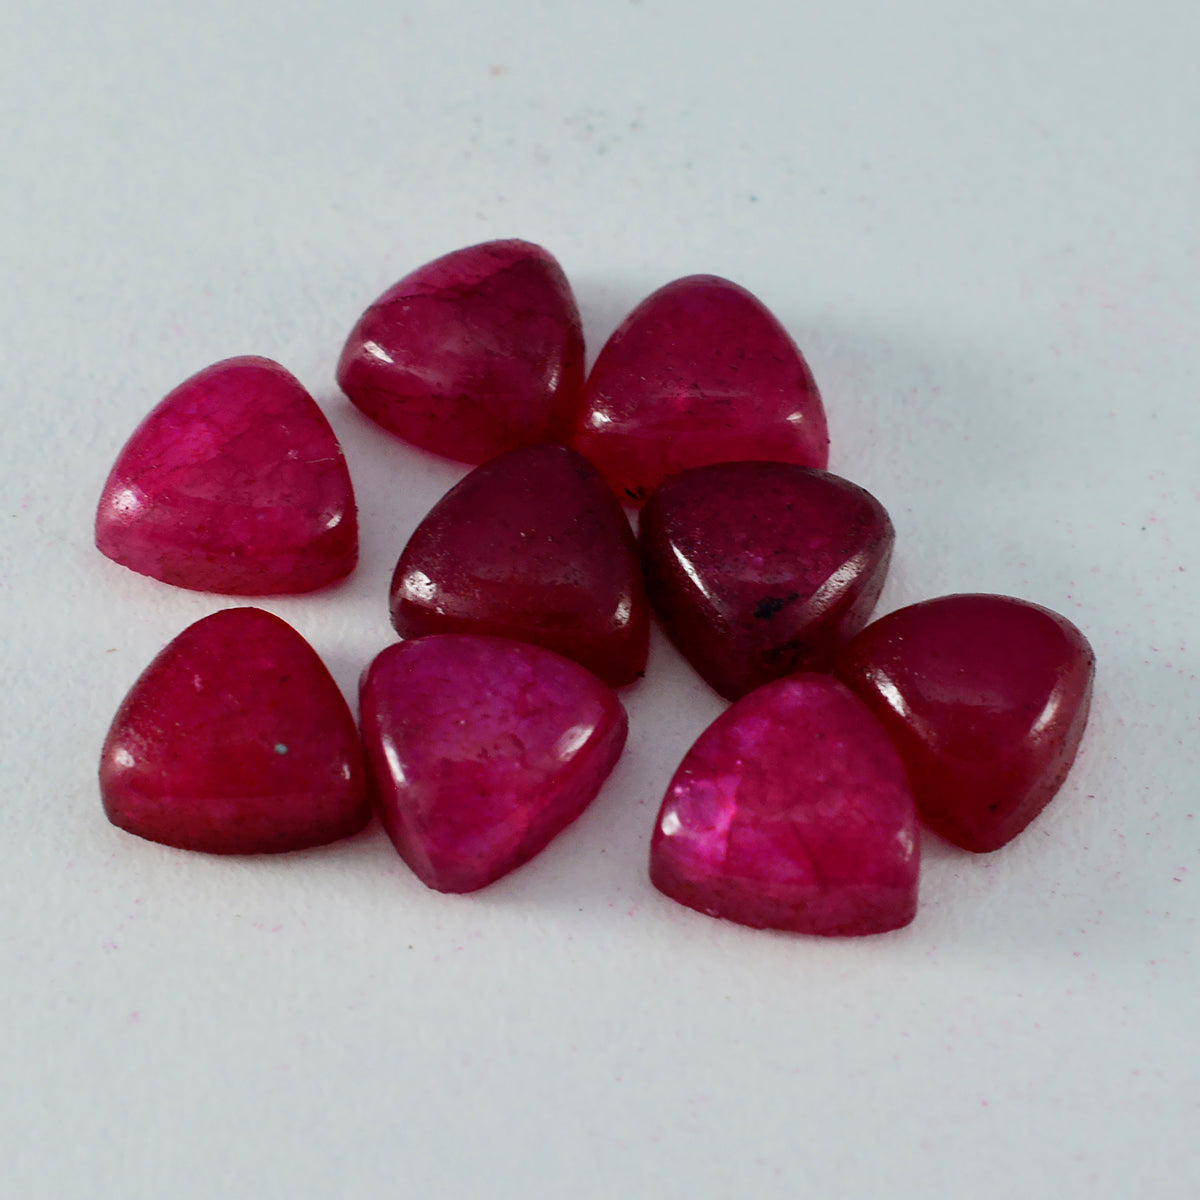 Riyogems 1pc cabochon jaspe rouge 6x6mm forme trillion excellente qualité pierres précieuses en vrac